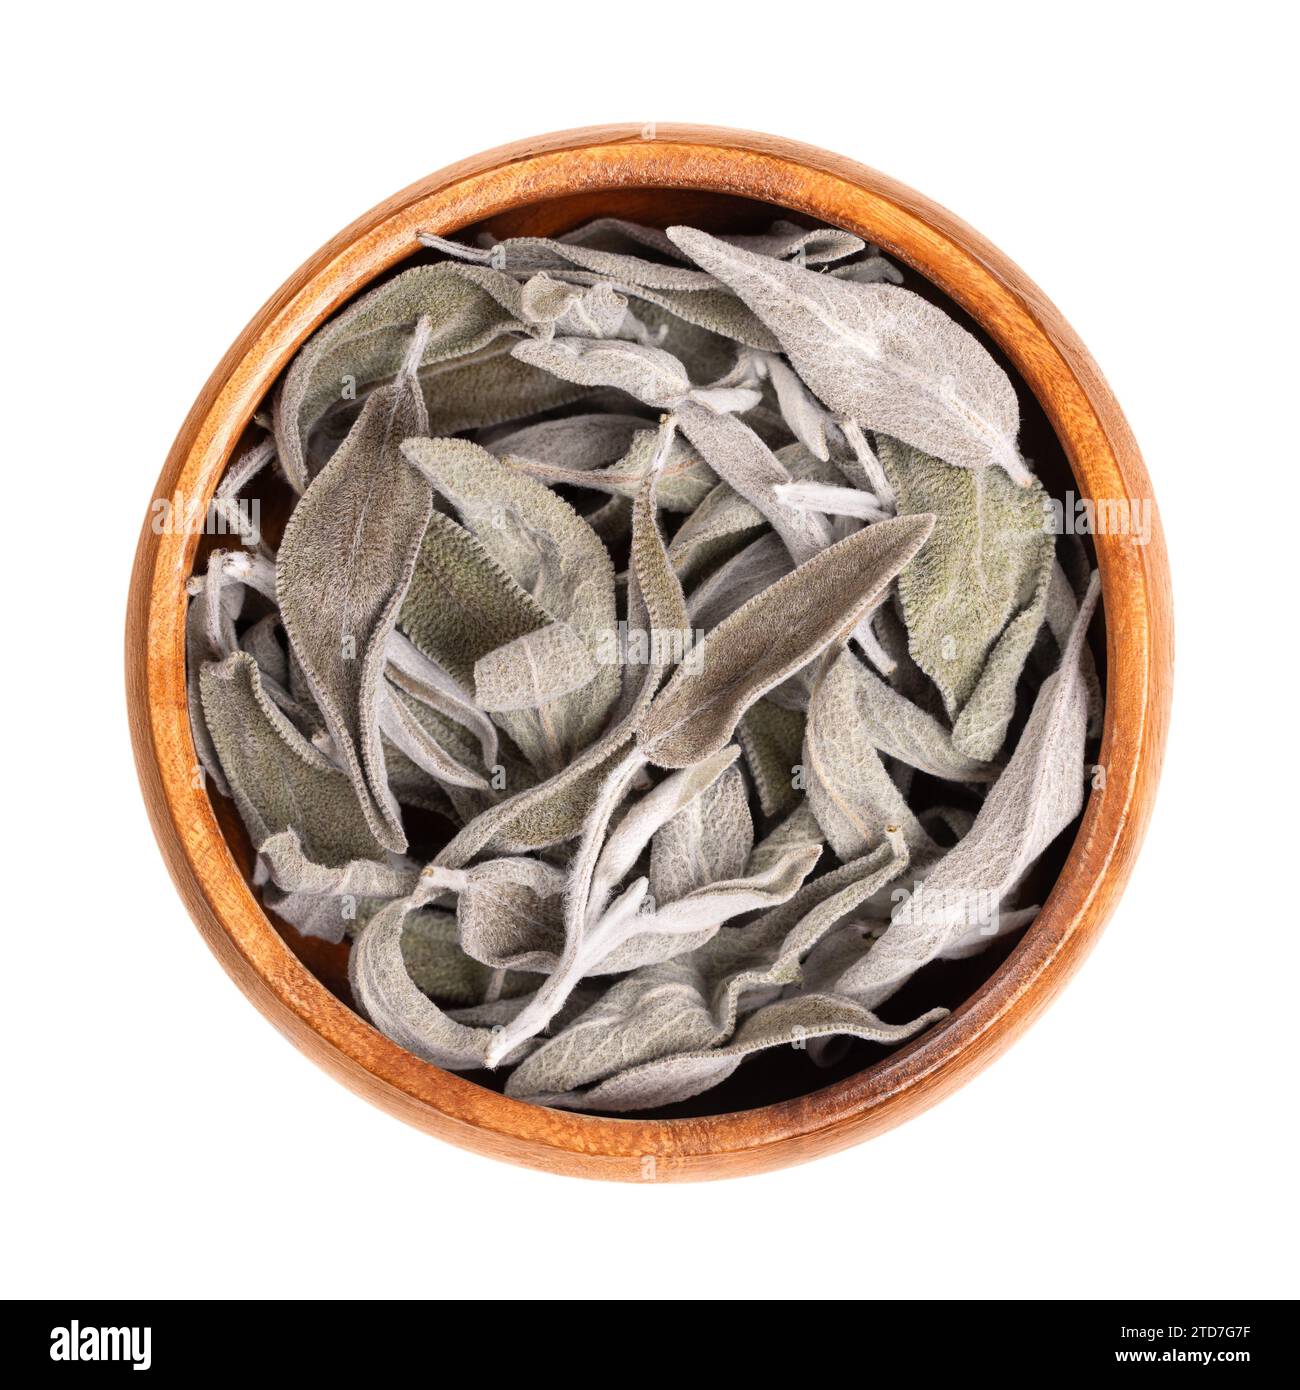 Getrocknete Salbeiblätter, in einer Holzschale. Salbei Salbei, Salvia officinalis. Graugrünes Kraut mit samtigen Blättern. Gewürz, Heilpflanze, als Weihrauch. Stockfoto